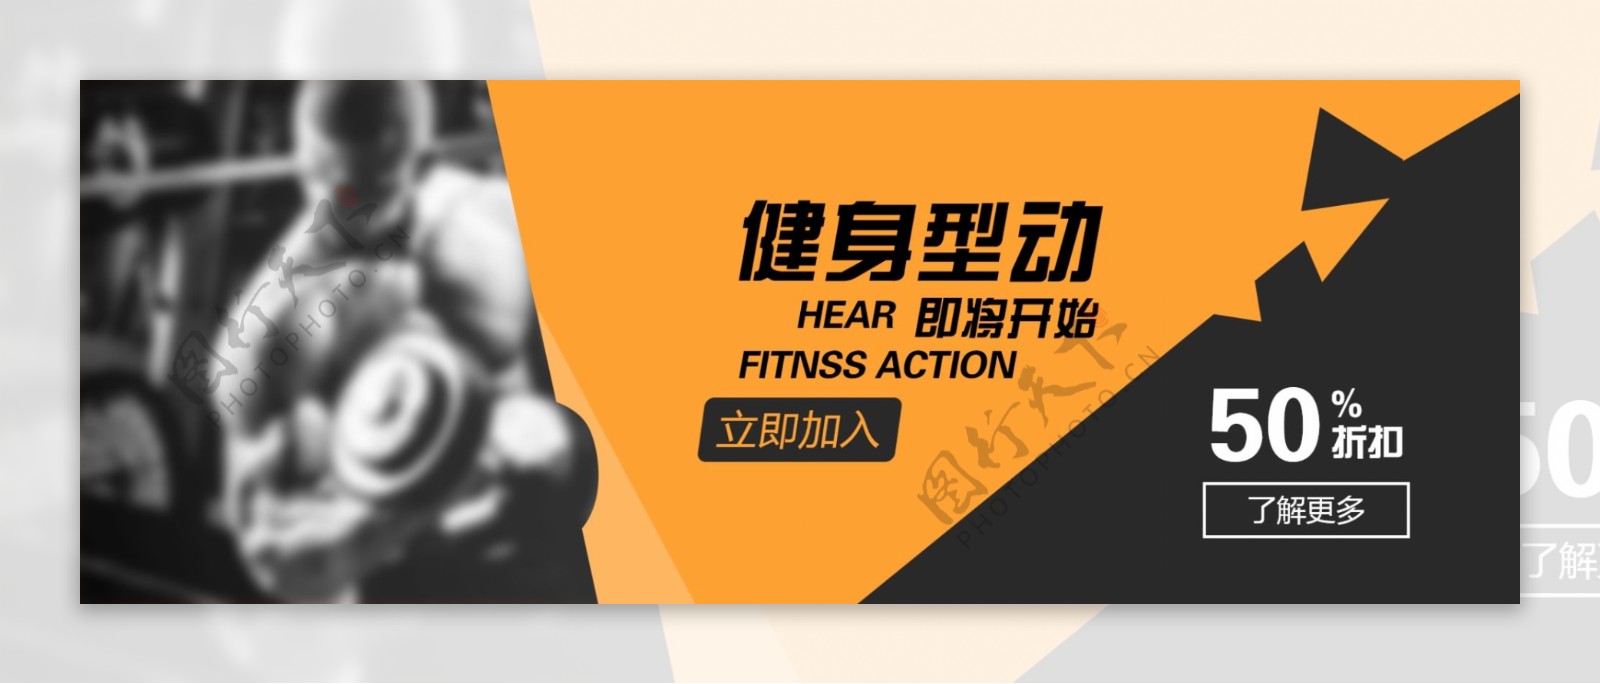 健身促销活动网站banner